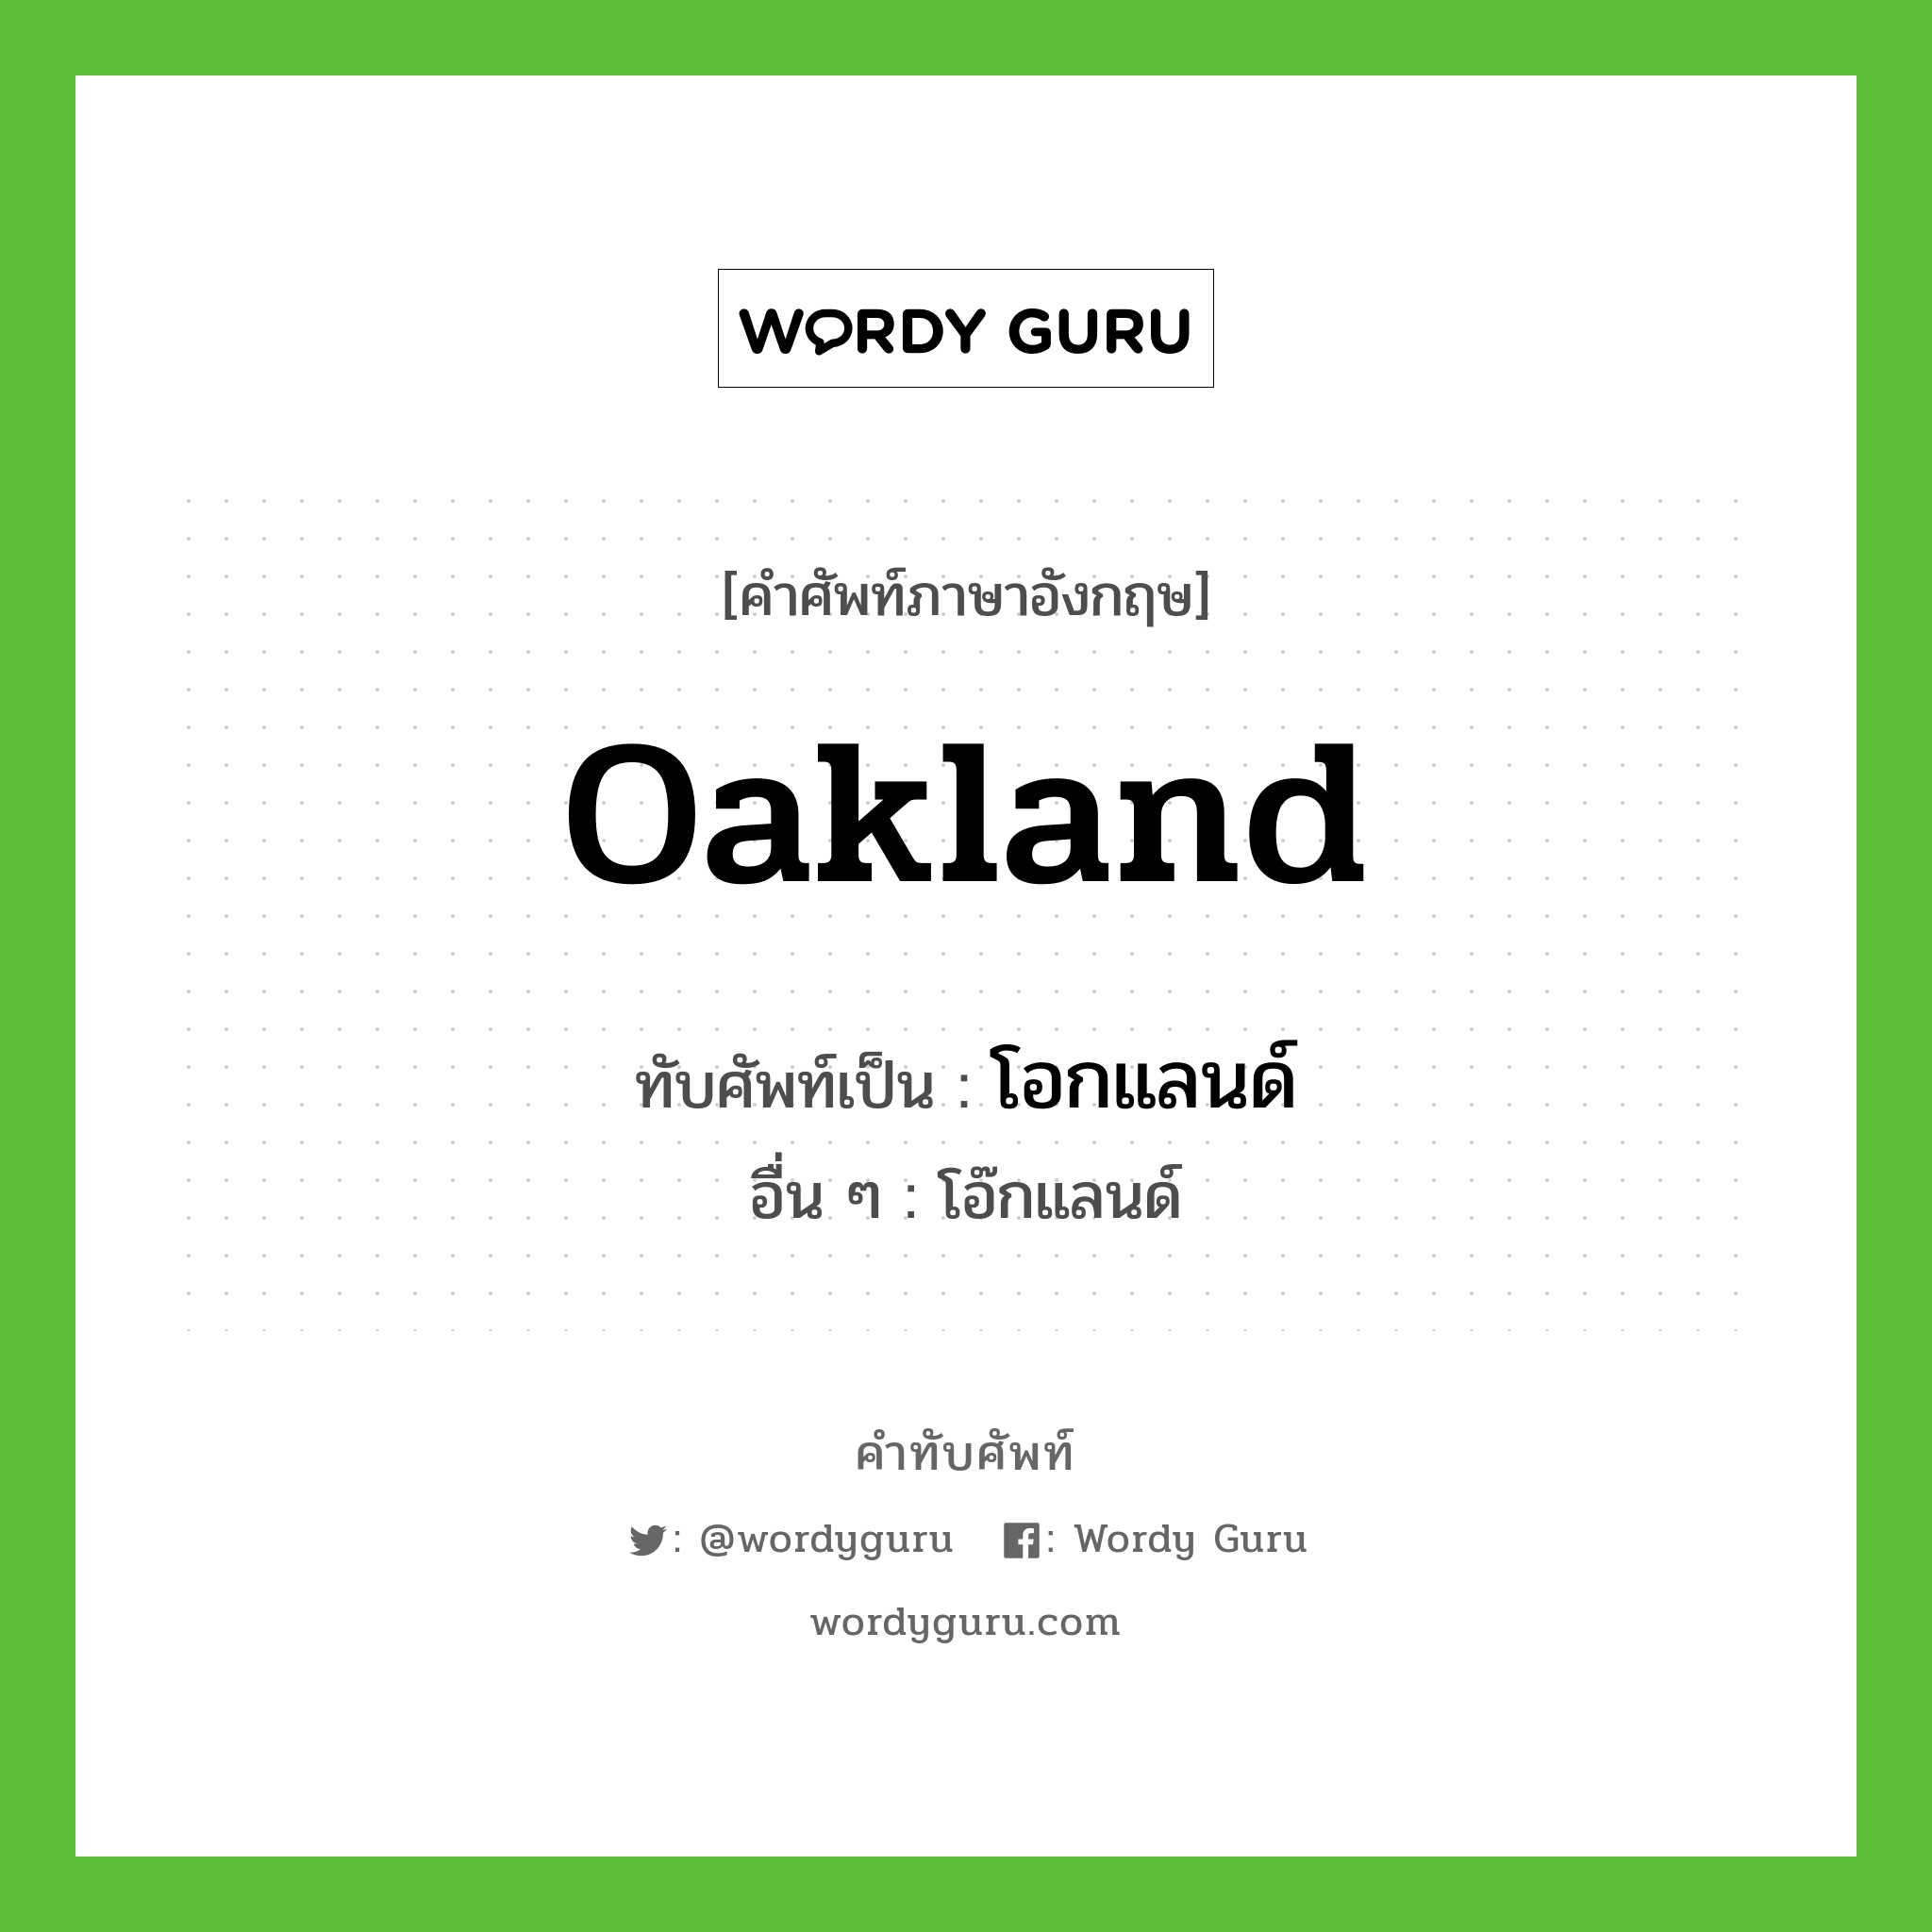 โอกแลนด์ เขียนอย่างไร?, คำศัพท์ภาษาอังกฤษ โอกแลนด์ ทับศัพท์เป็น Oakland อื่น ๆ โอ๊กแลนด์